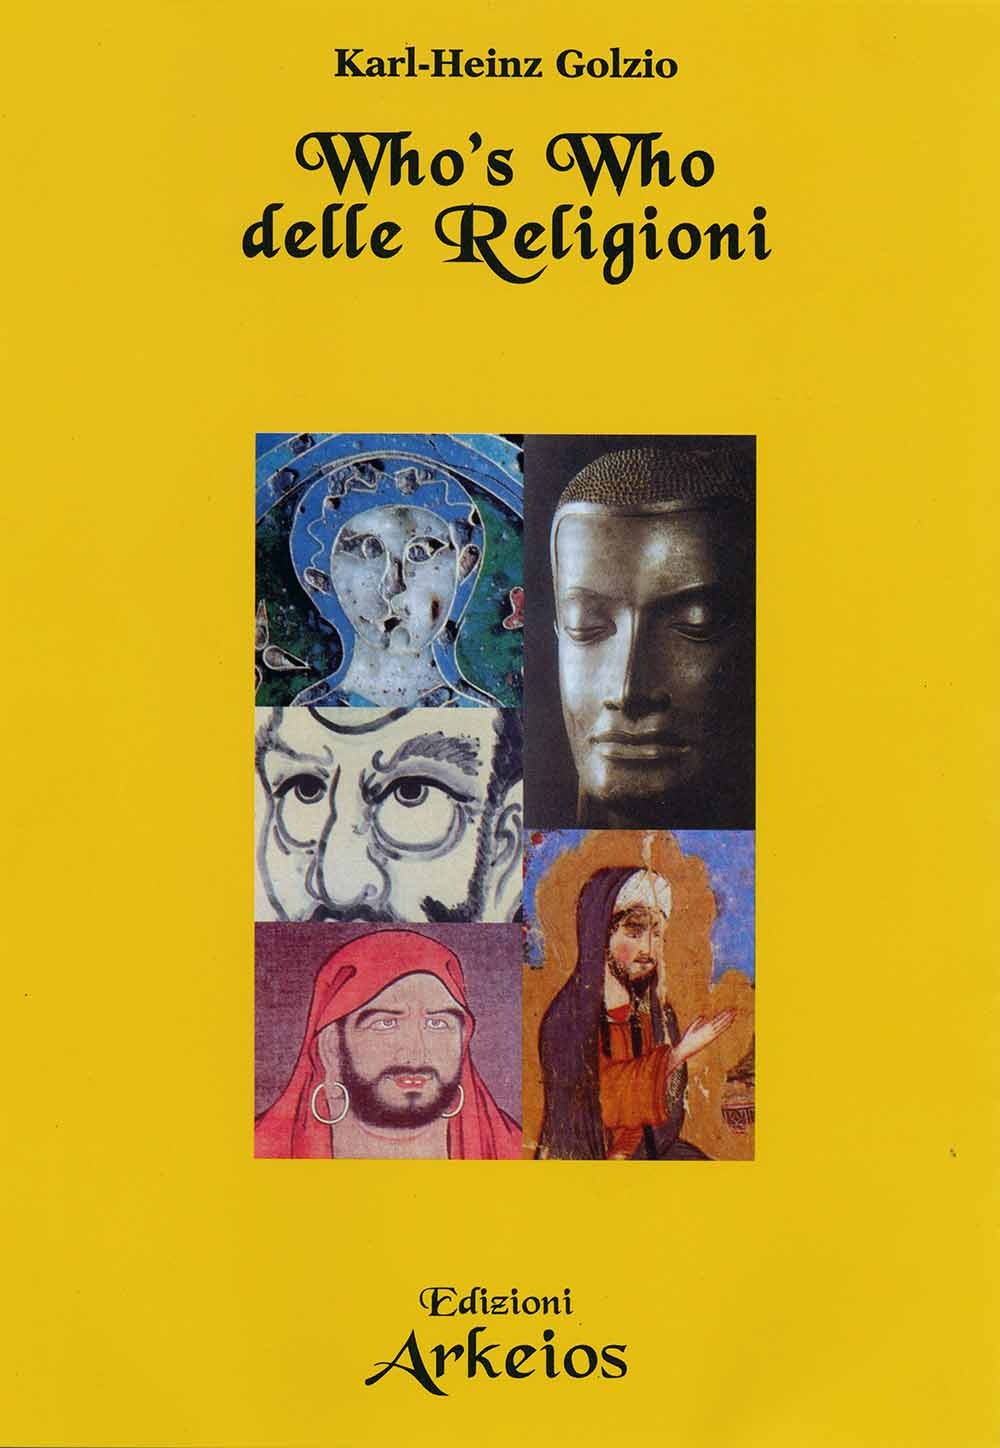 Copertina libro Who's Who delle Religioni